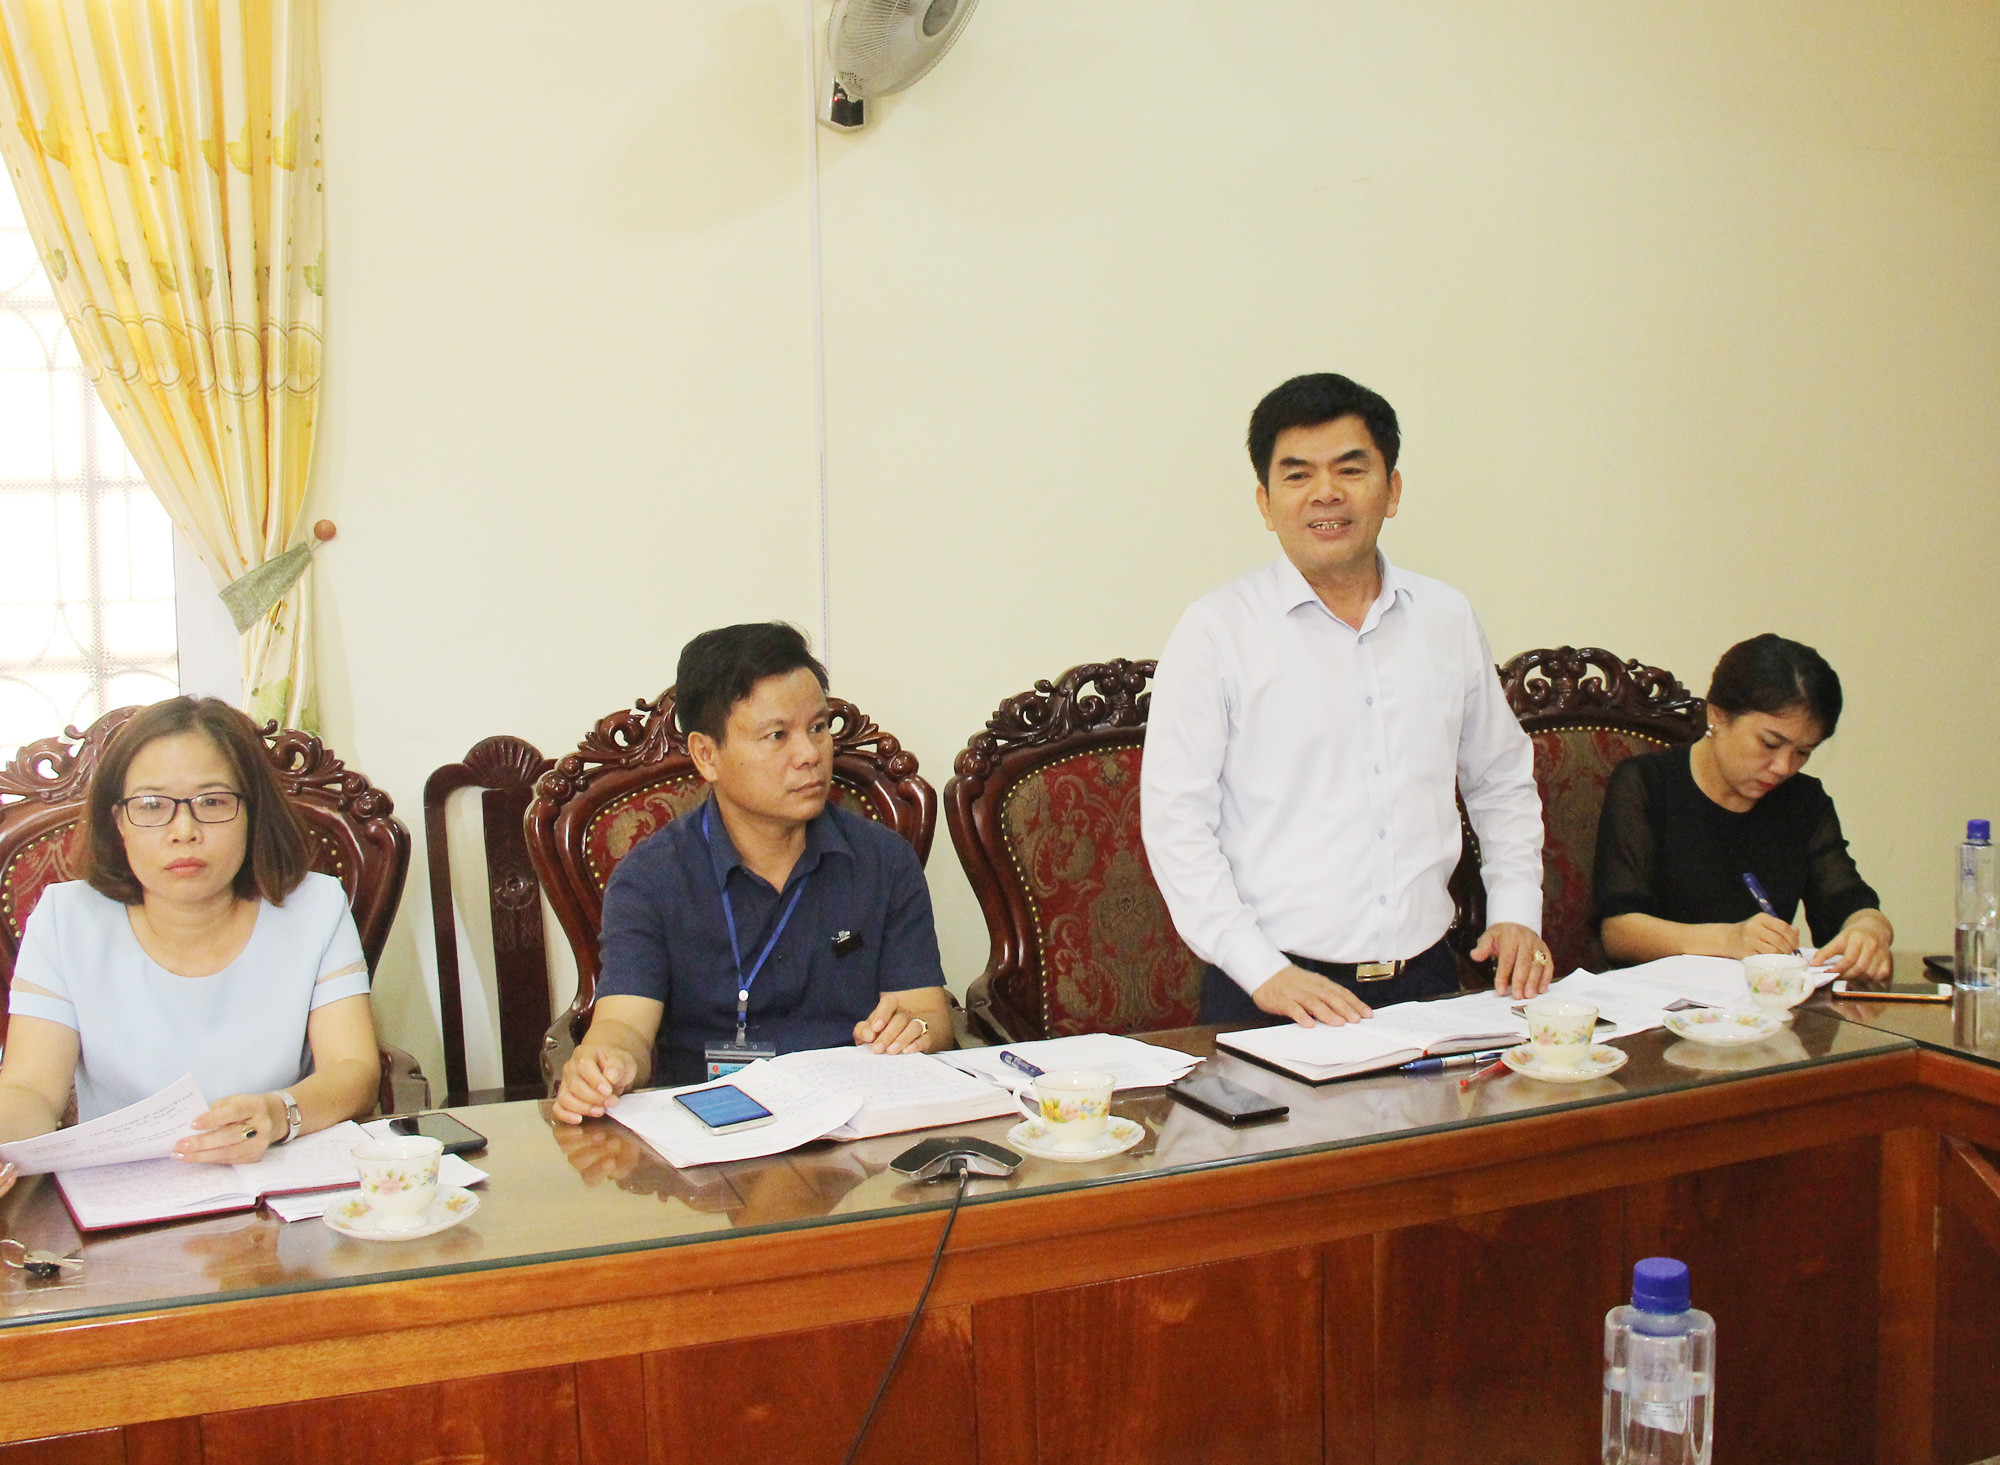 Phó Chủ tịch UBND thị xã Phạm Văn Thạch đề nghị tỉnh cần hỗ trợ thị xã trong việc giải quyết một số vướng mắc trong cấp, cấp đổi GCNQSDĐ. Ảnh: Minh Chi